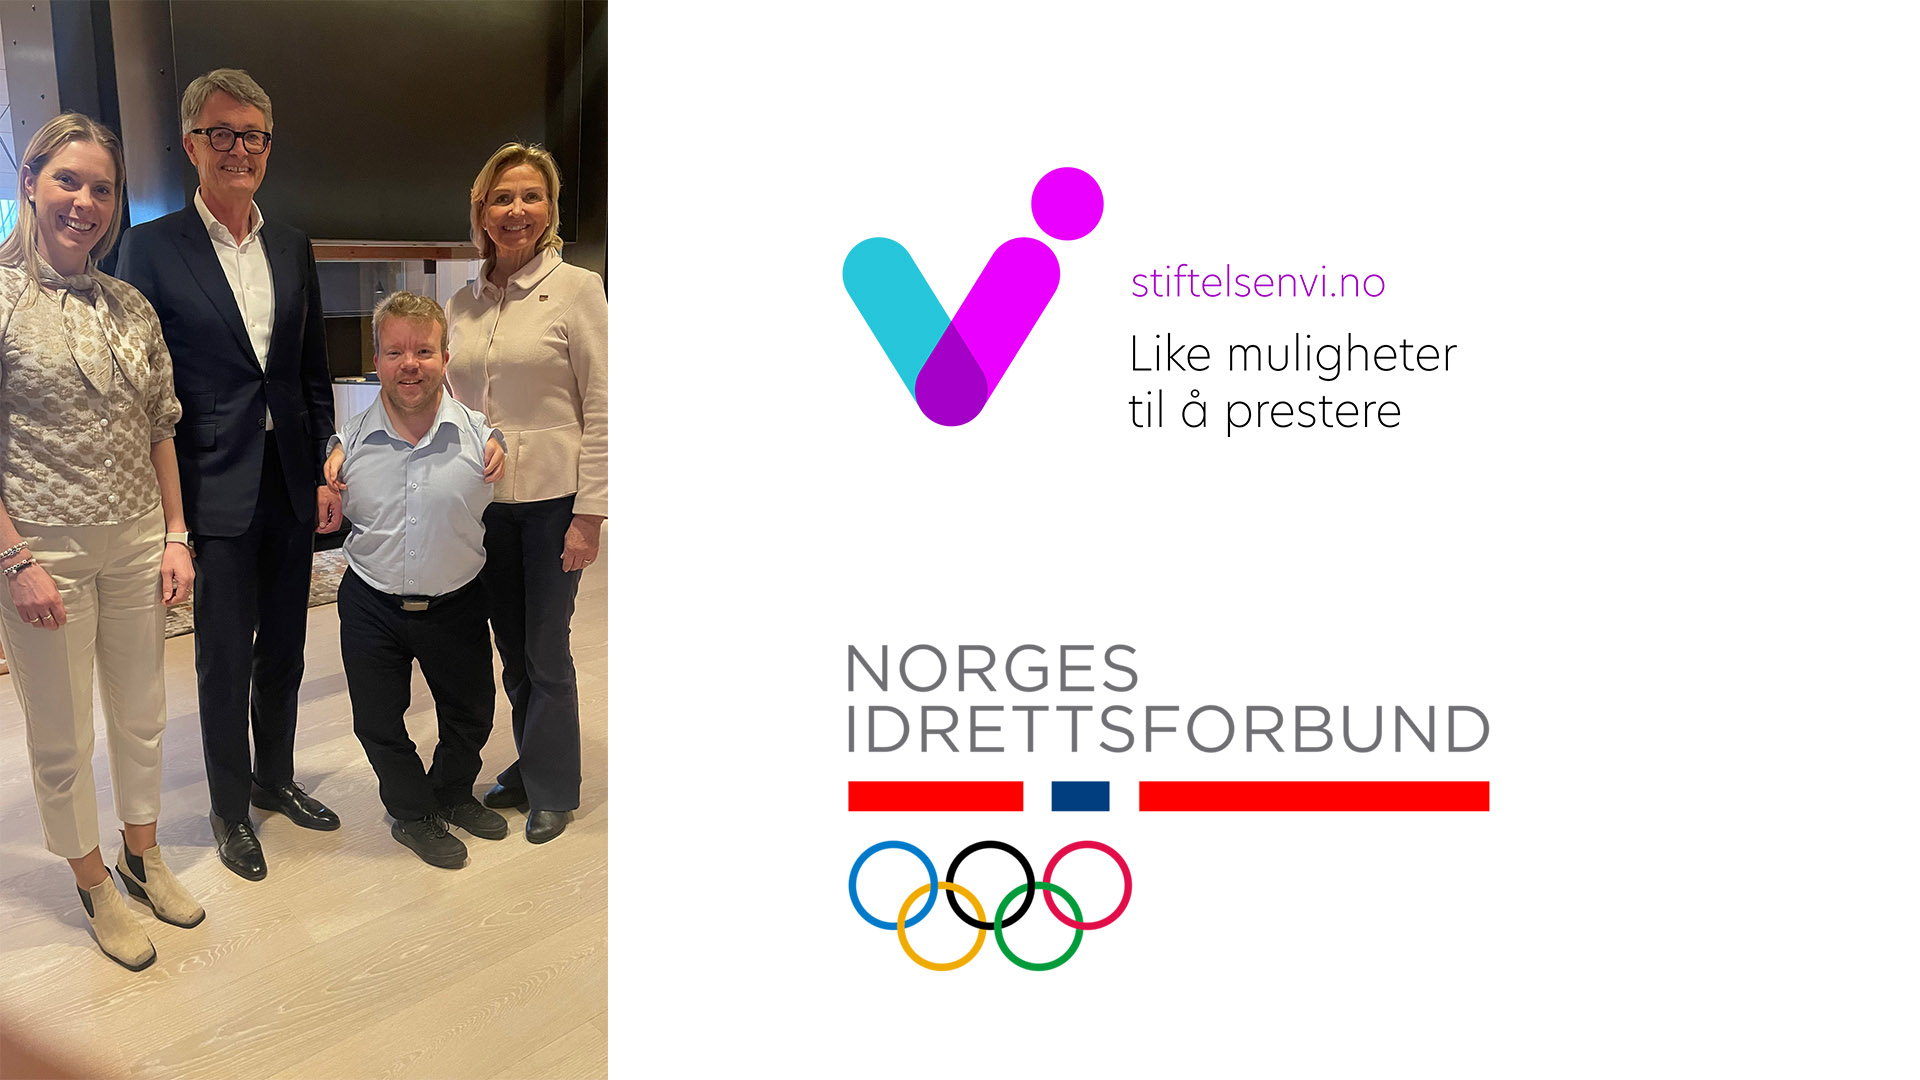 Stiftelsen VI og Norges idrettsforbund videreutvikler samarbeidet